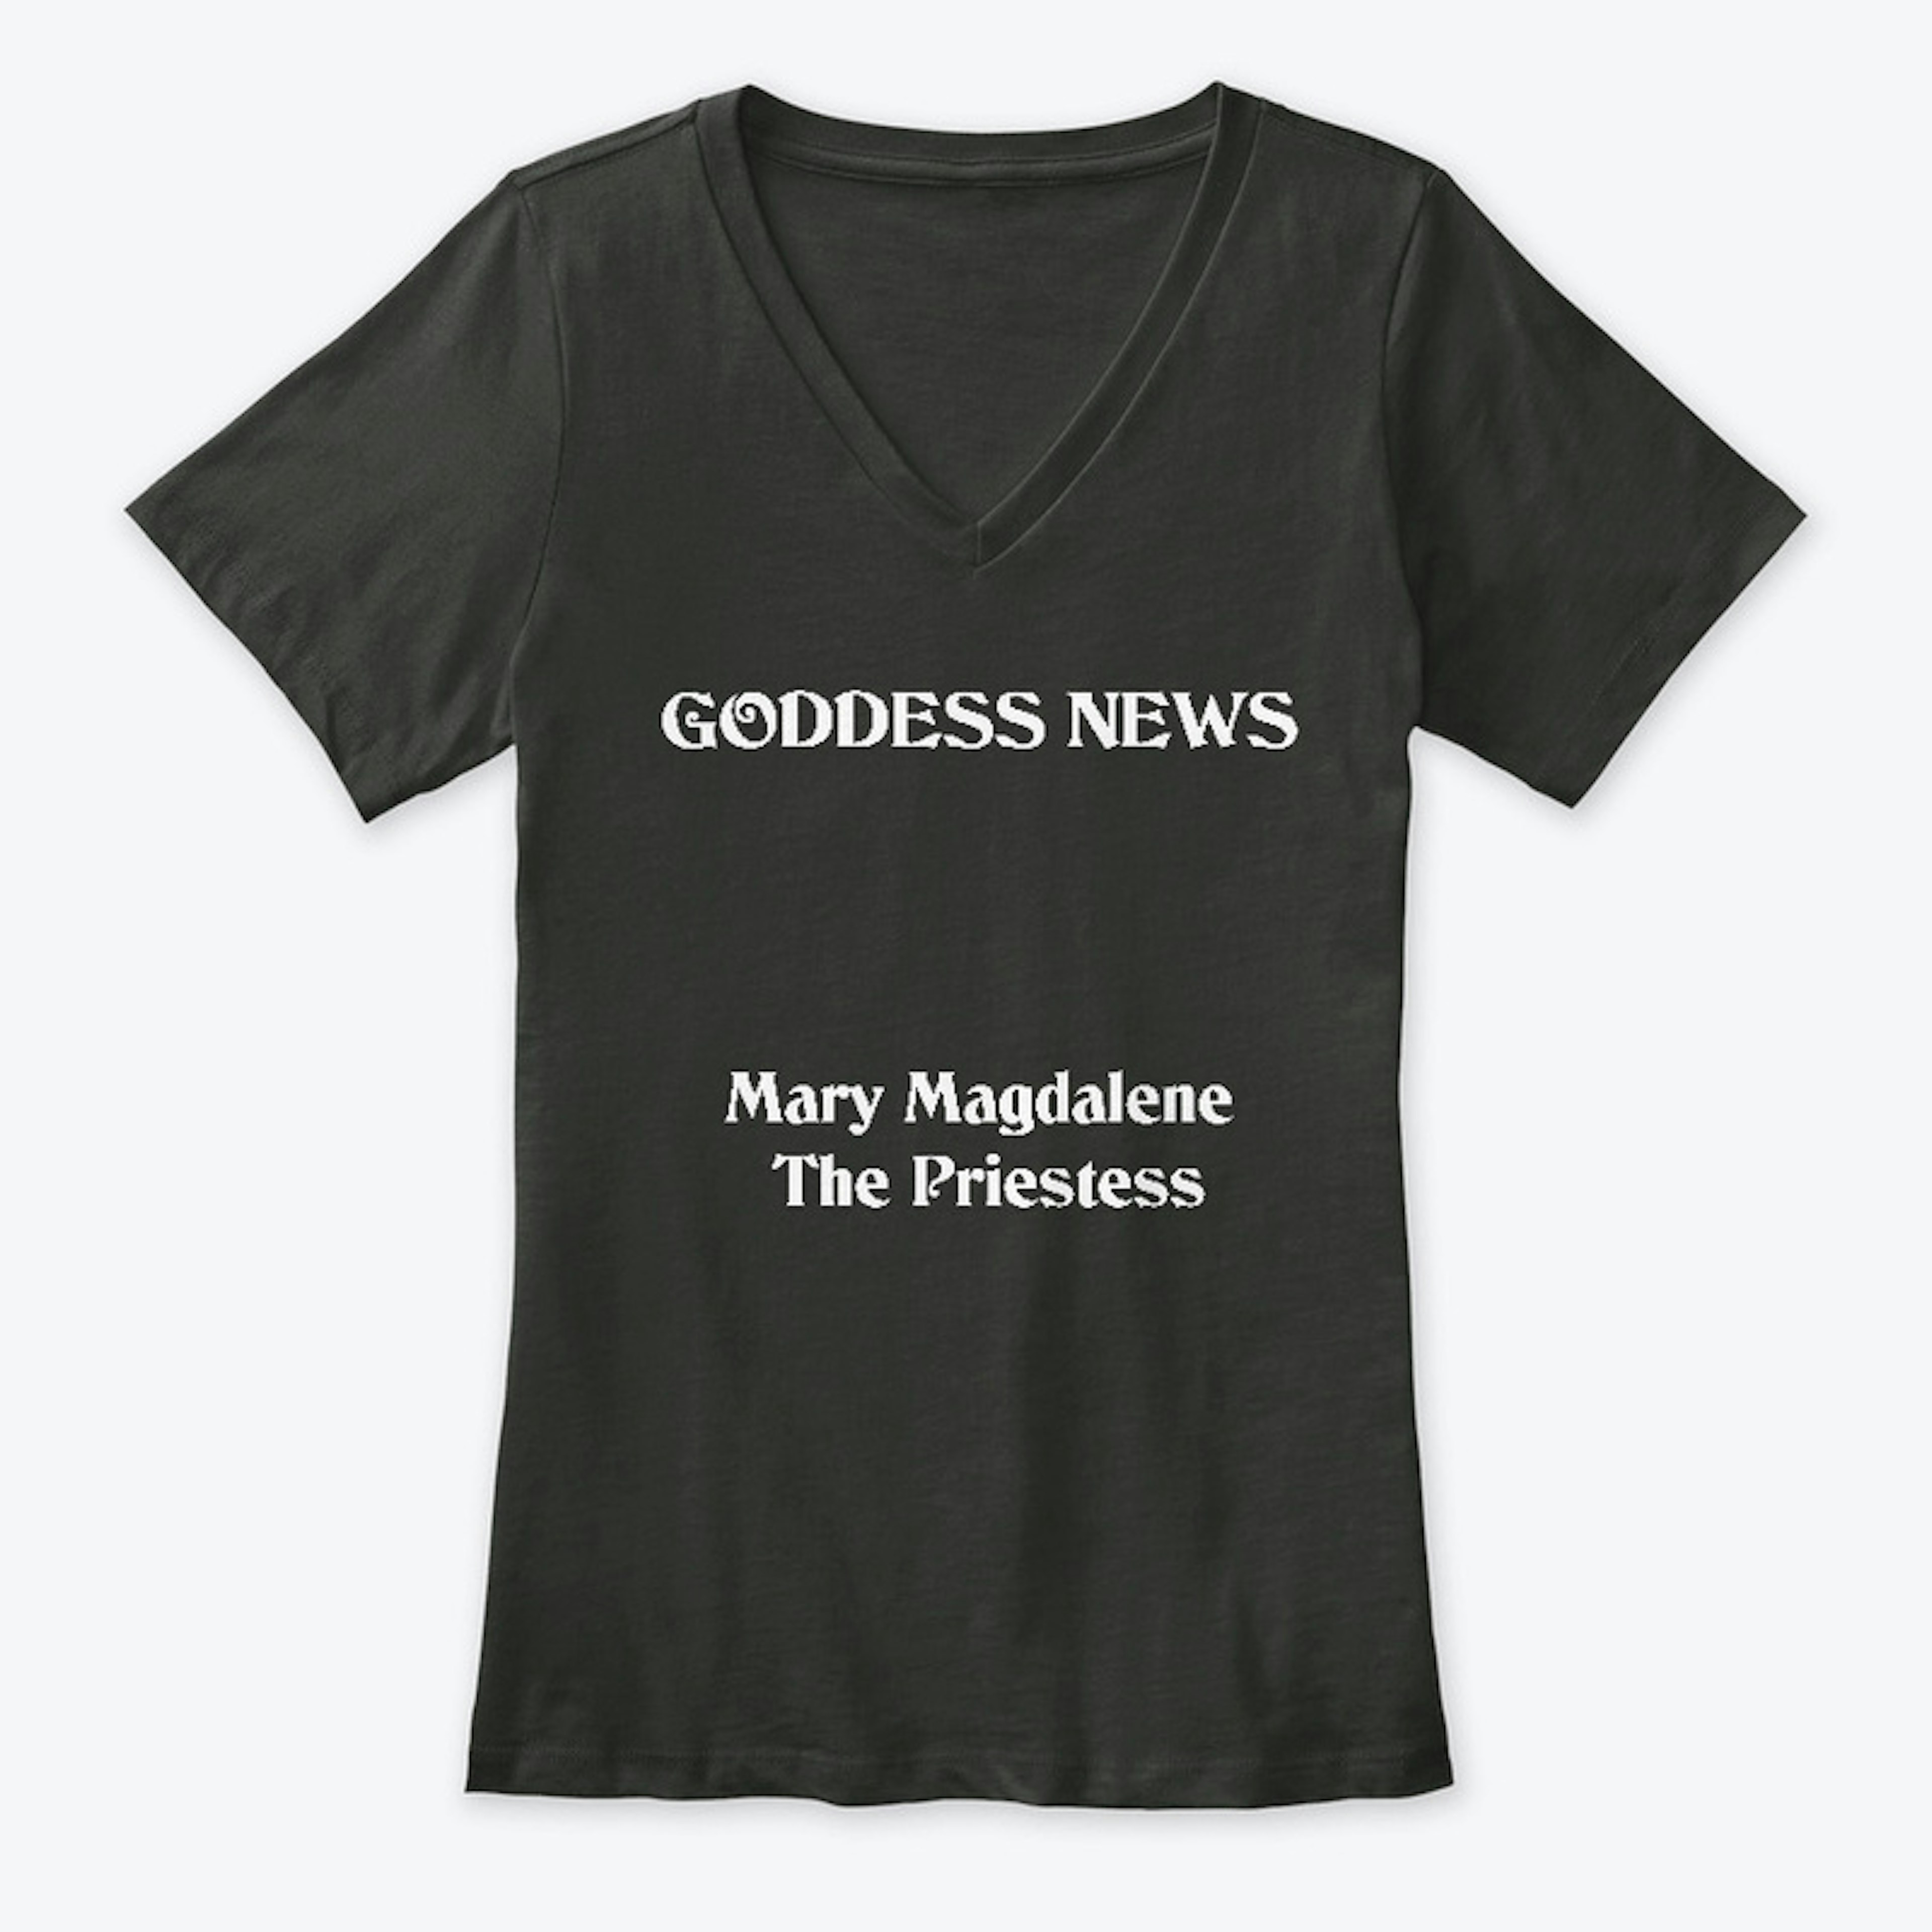 Mary Magdalene - The Priestess